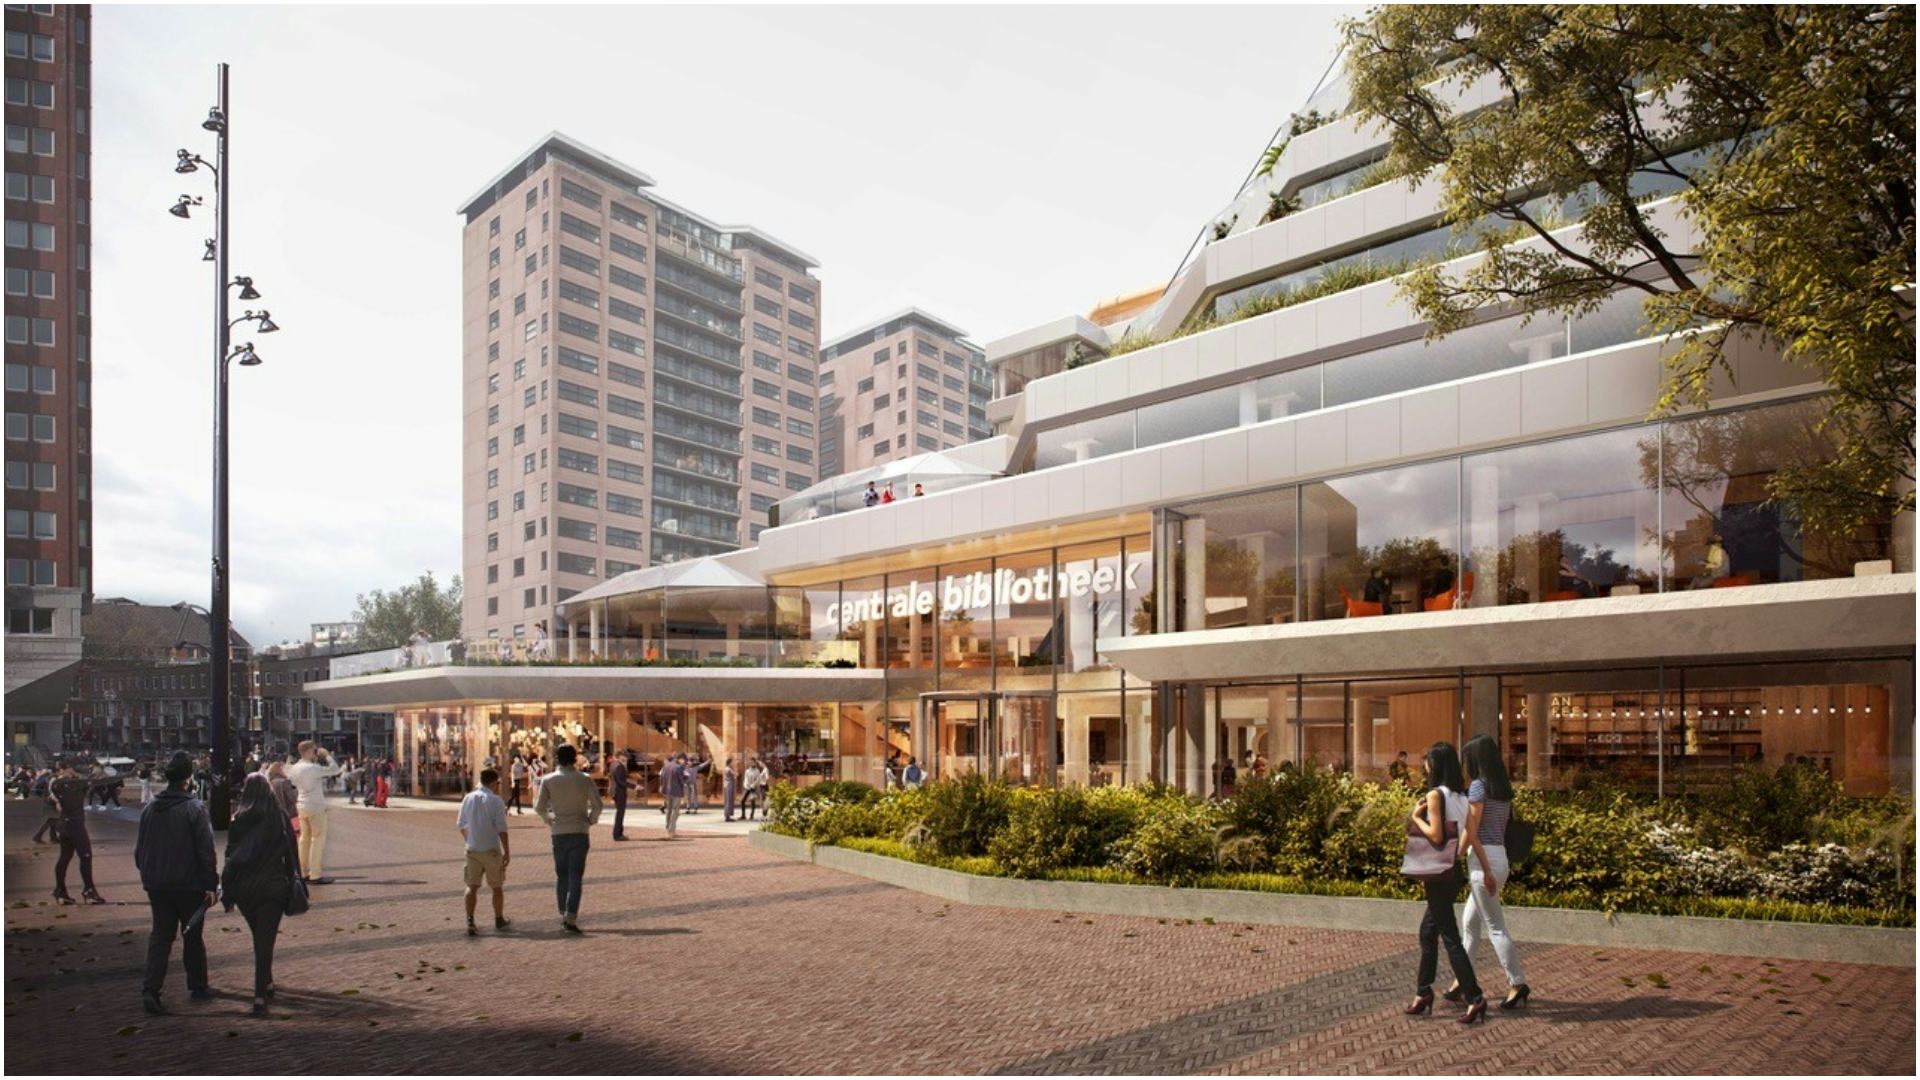 Noors Rotterdams architectencombinatie maakt ontwerp voor vernieuwing Centrale Bibliotheek